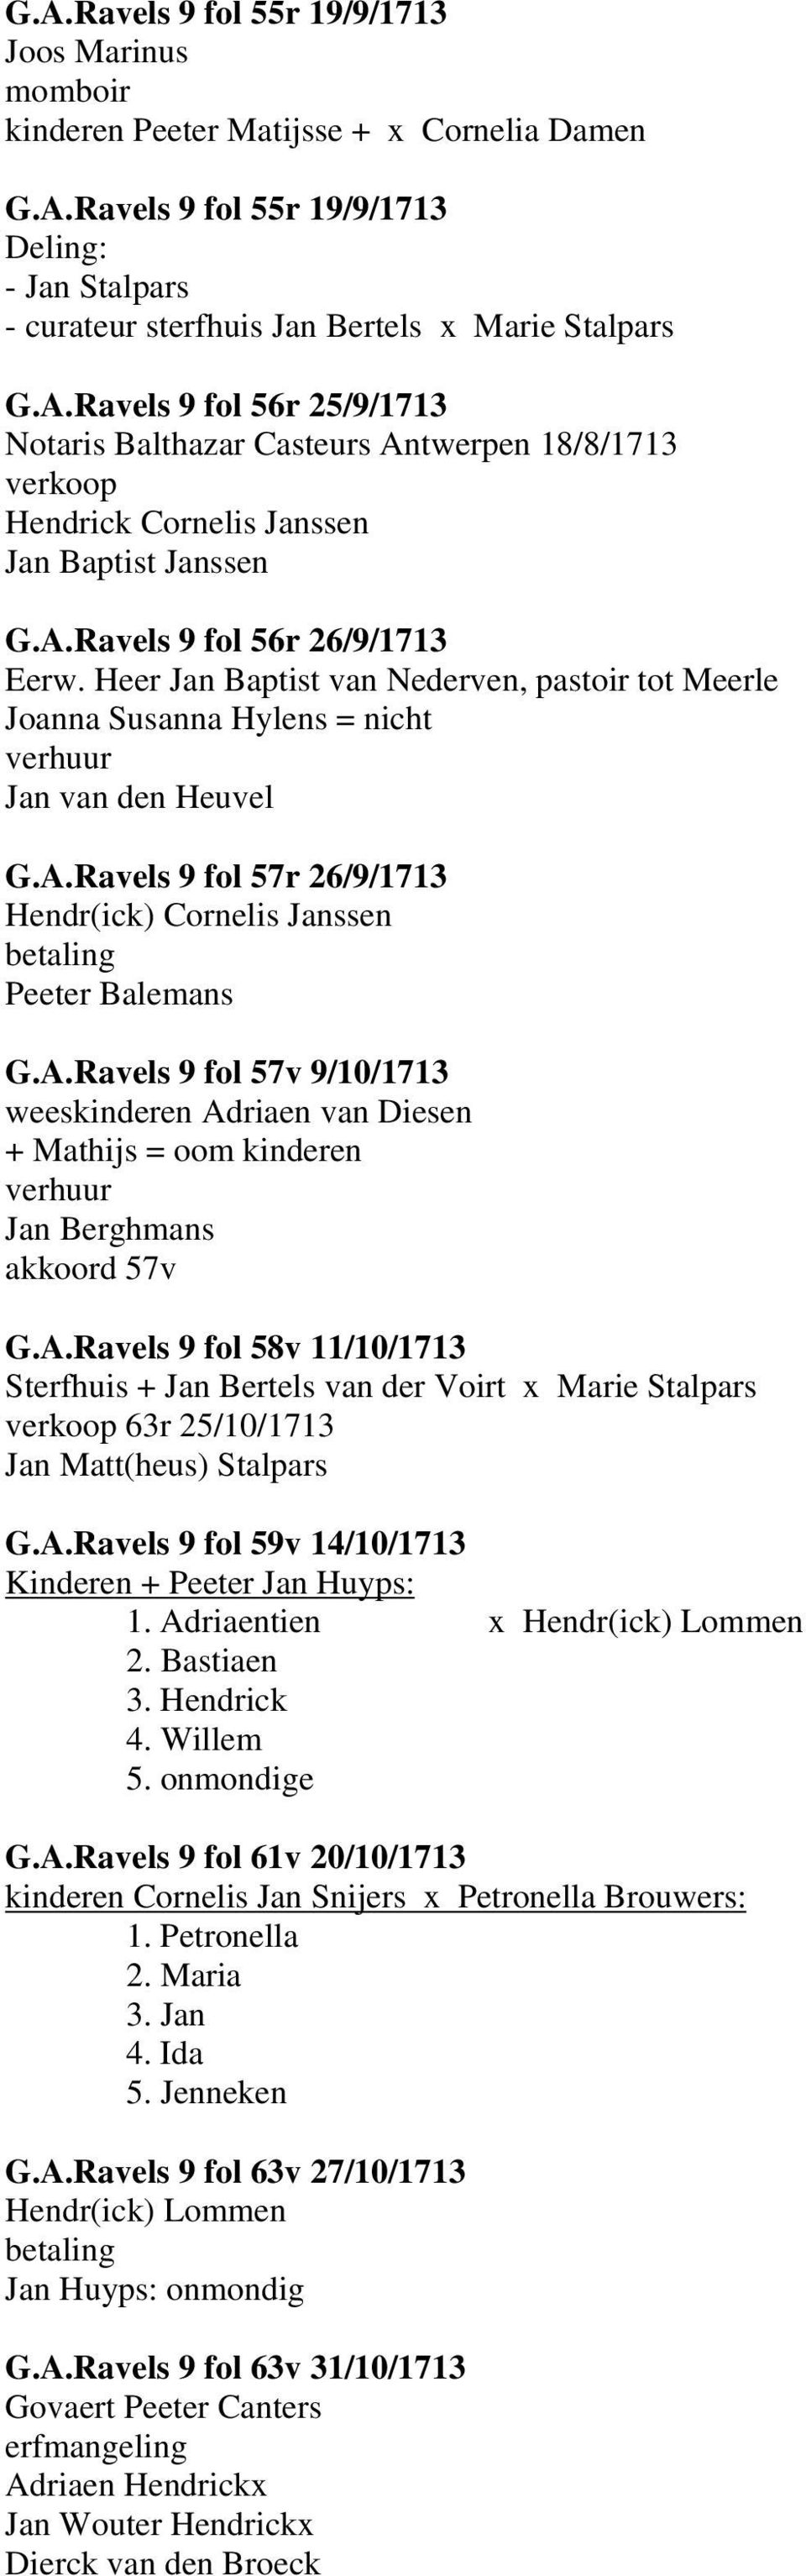 Heer Jan Baptist van Nederven, pastoir tot Meerle Joanna Susanna Hylens = nicht Jan van den Heuvel G.A.